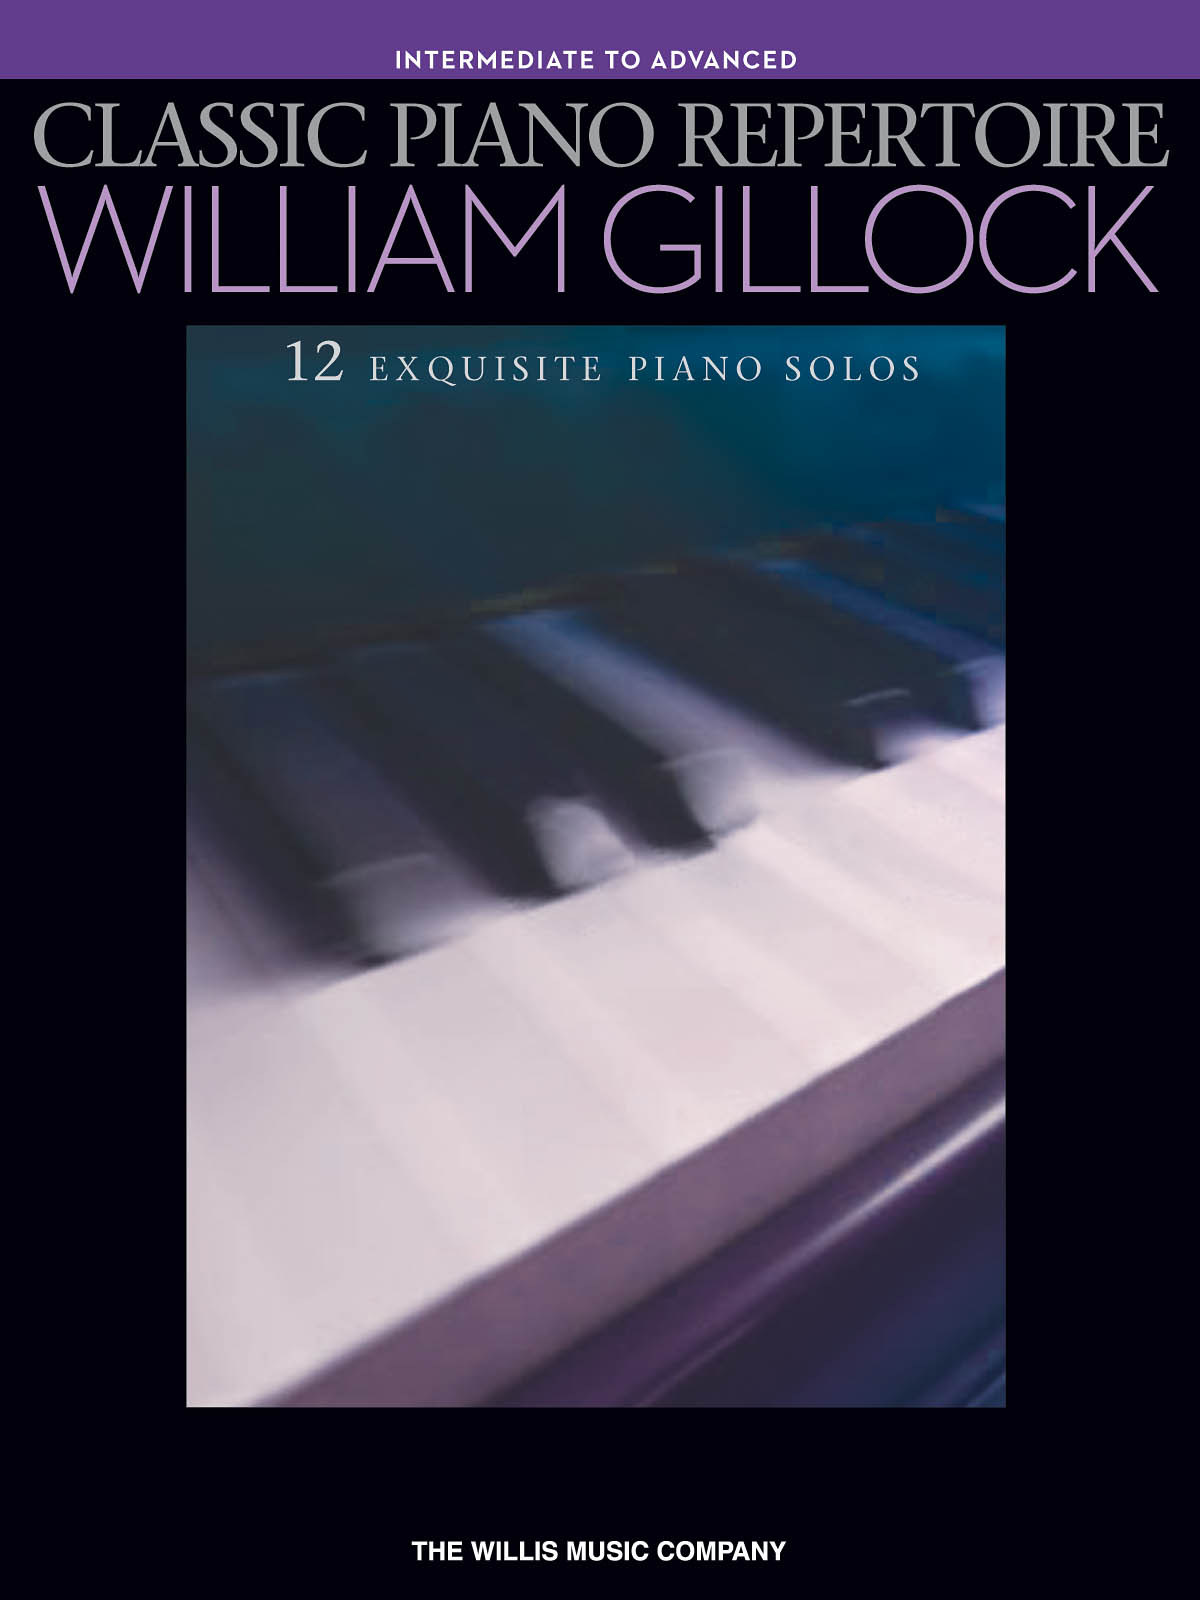 Classic Piano Repertoire - William Gillock - Intermediate to Advanced Level - klasické skladby na klavír